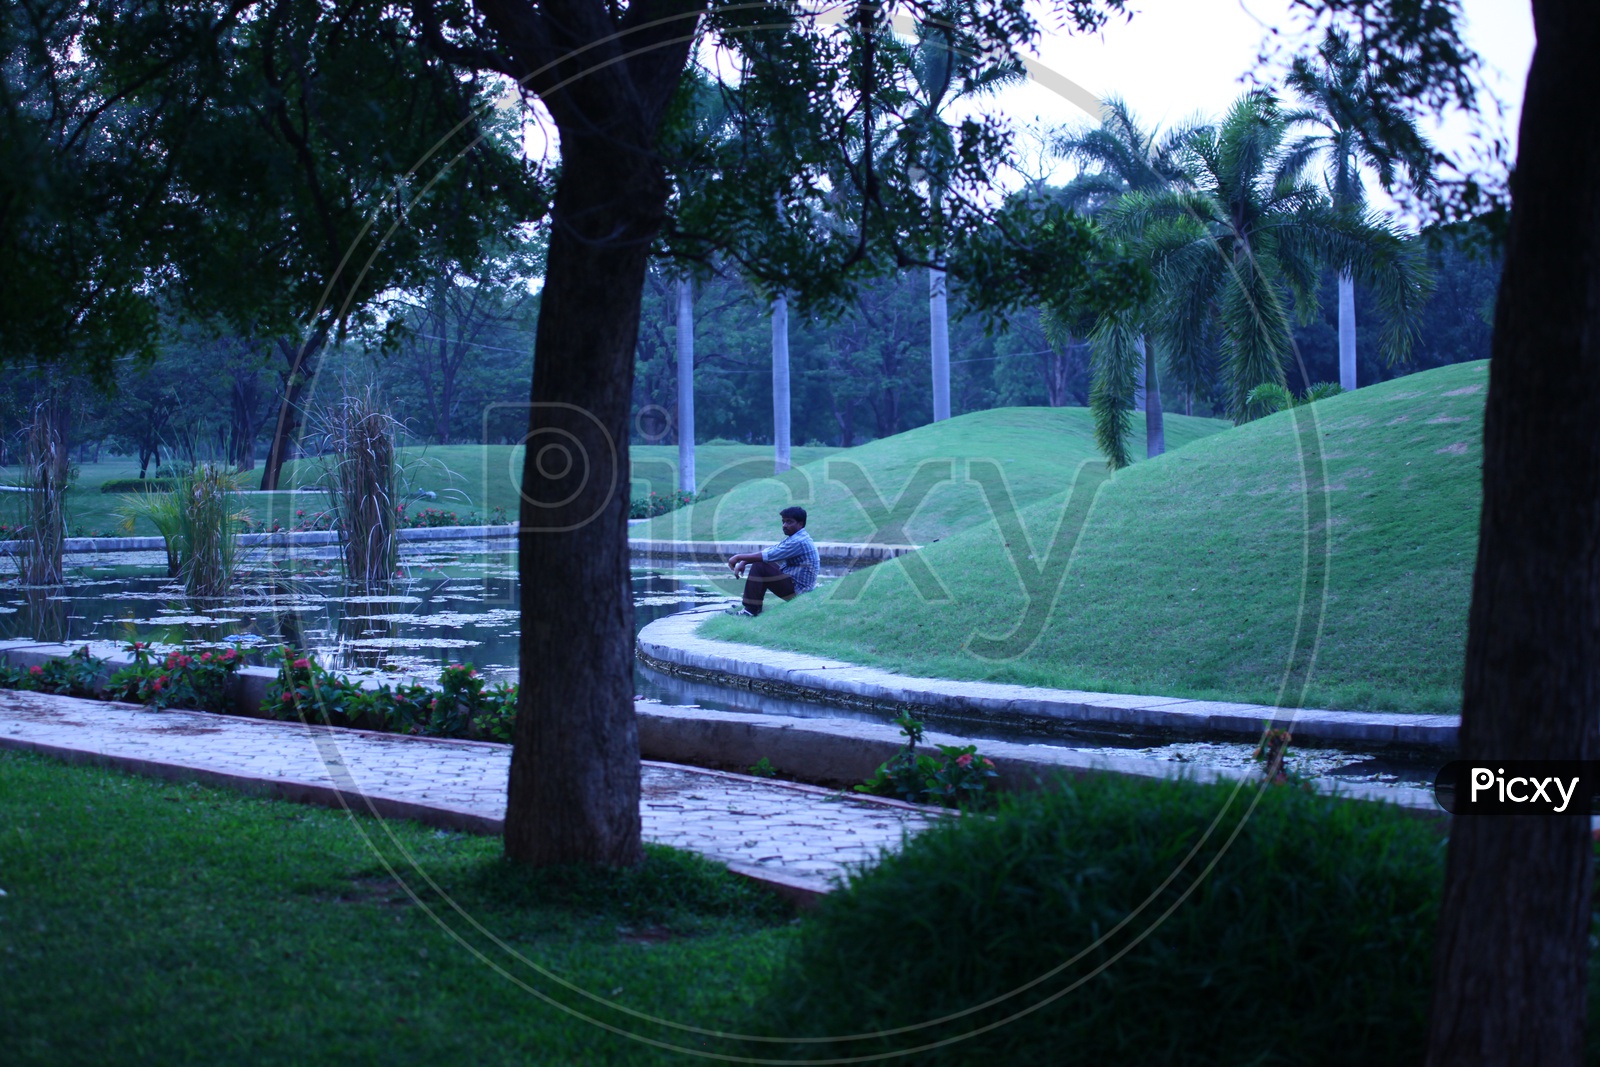 Man sitting alongside the green lawn